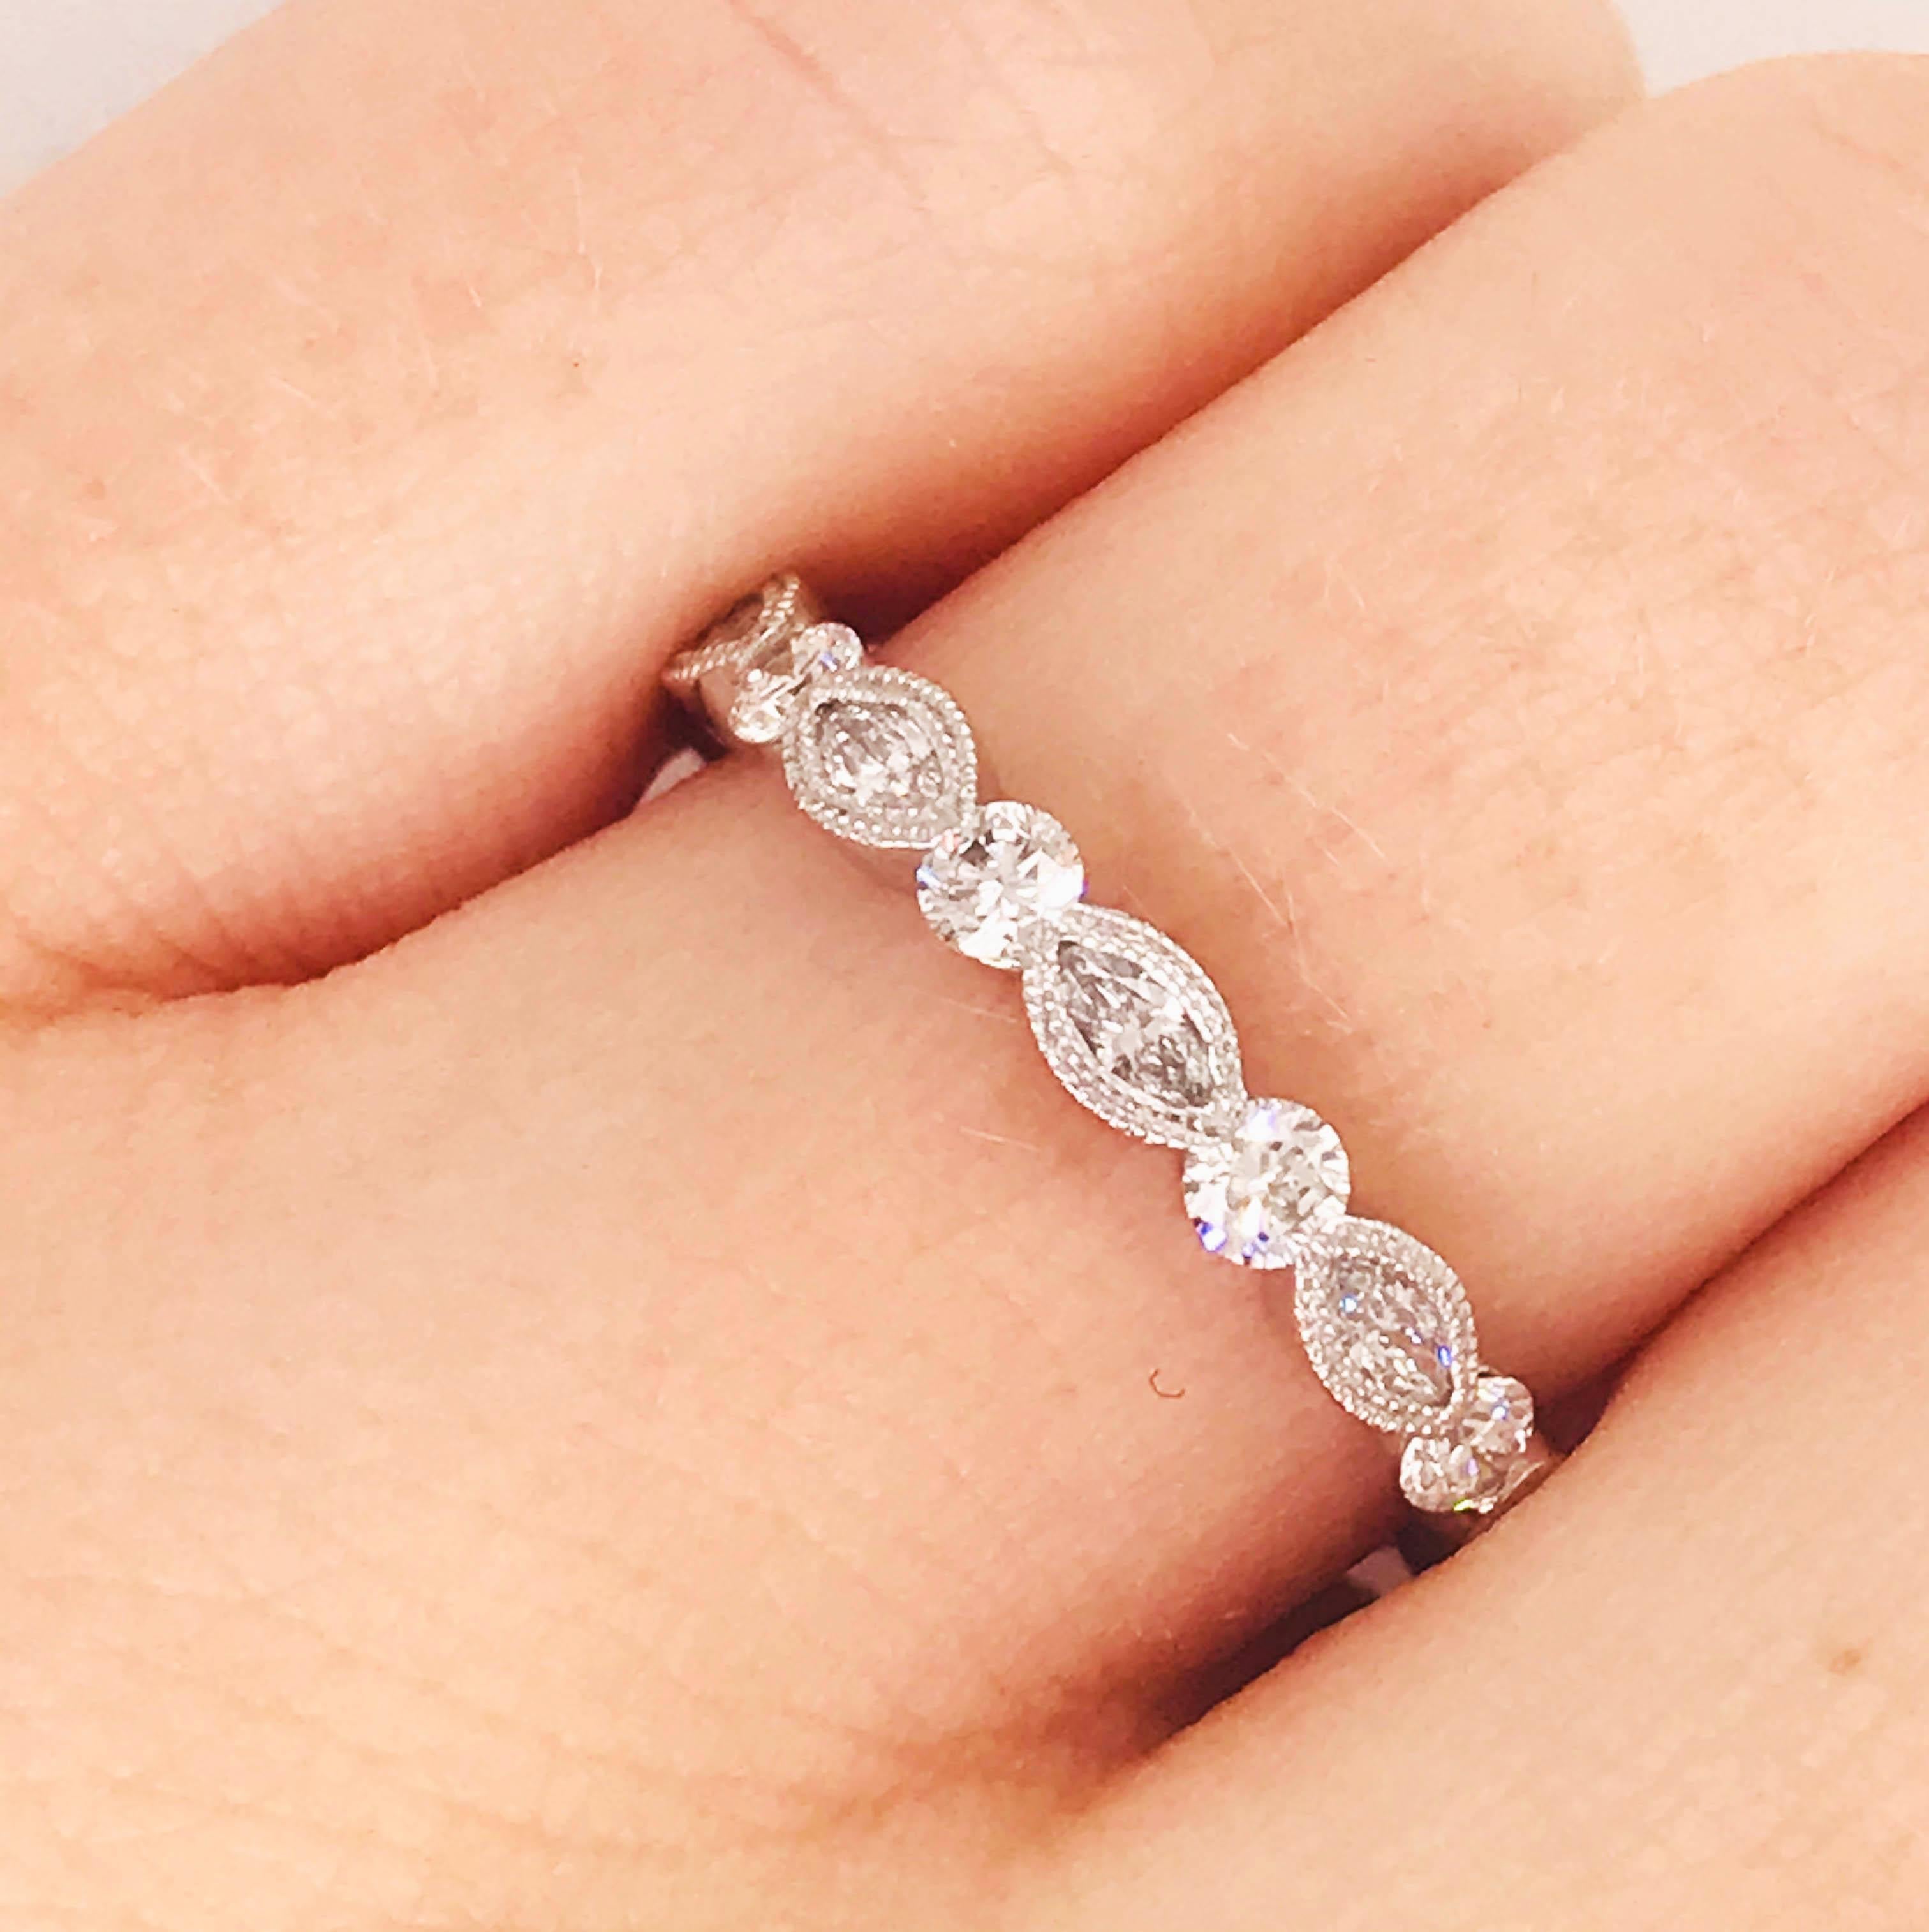 Il s'agit d'un brillant bracelet en or blanc 18k avec un diamant de 1/2 carat ! Avec des diamants marquises sertis dans un collier perlé à la main entre des diamants ronds et brillants. Ce bracelet présente un motif de diamants qui fait les trois